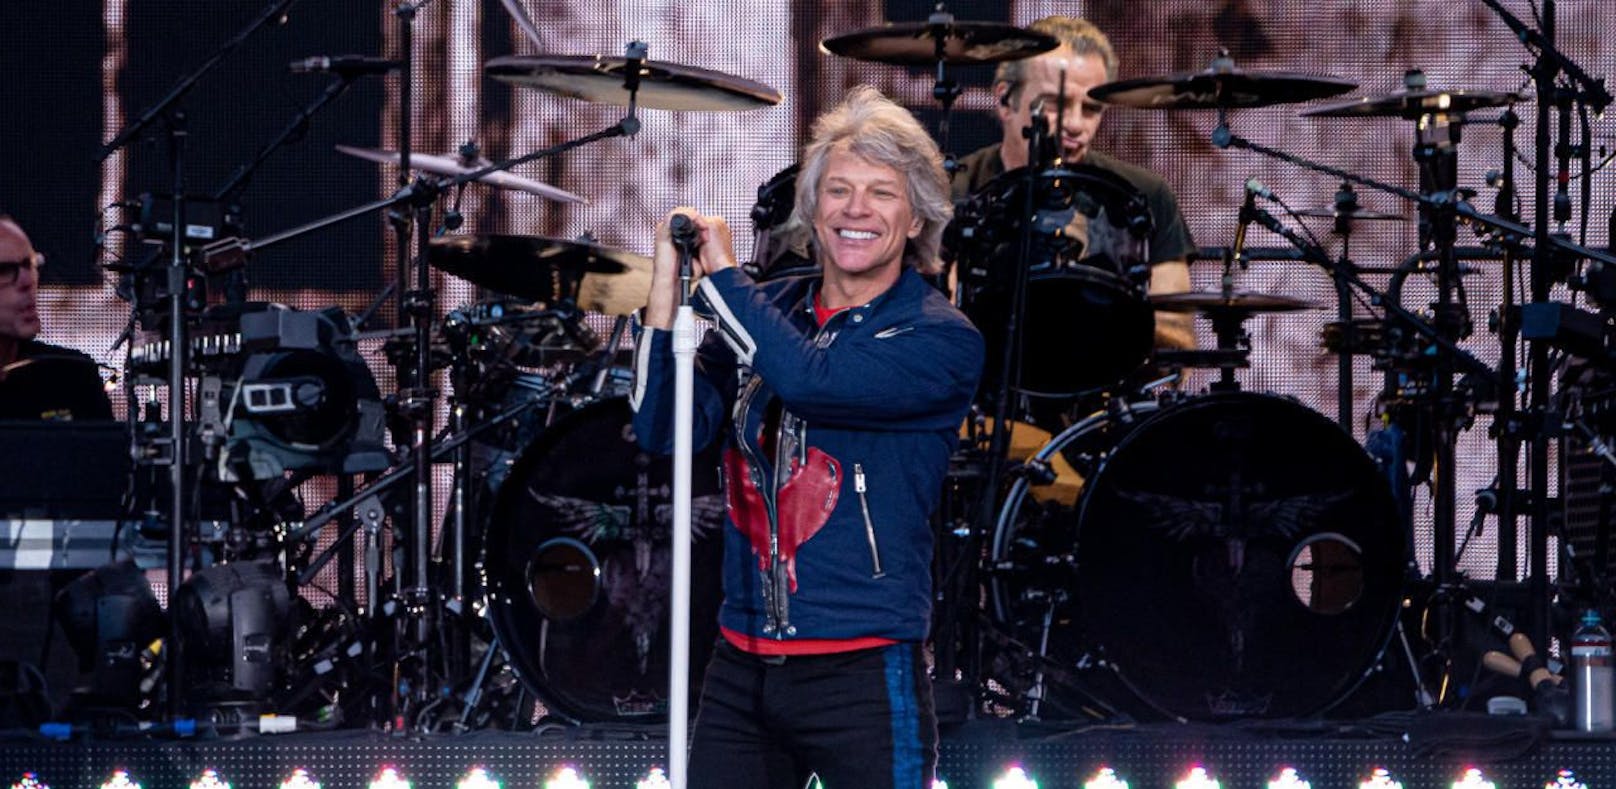 Stimme pfui, Stimmung hui bei Bon Jovi-Konzert